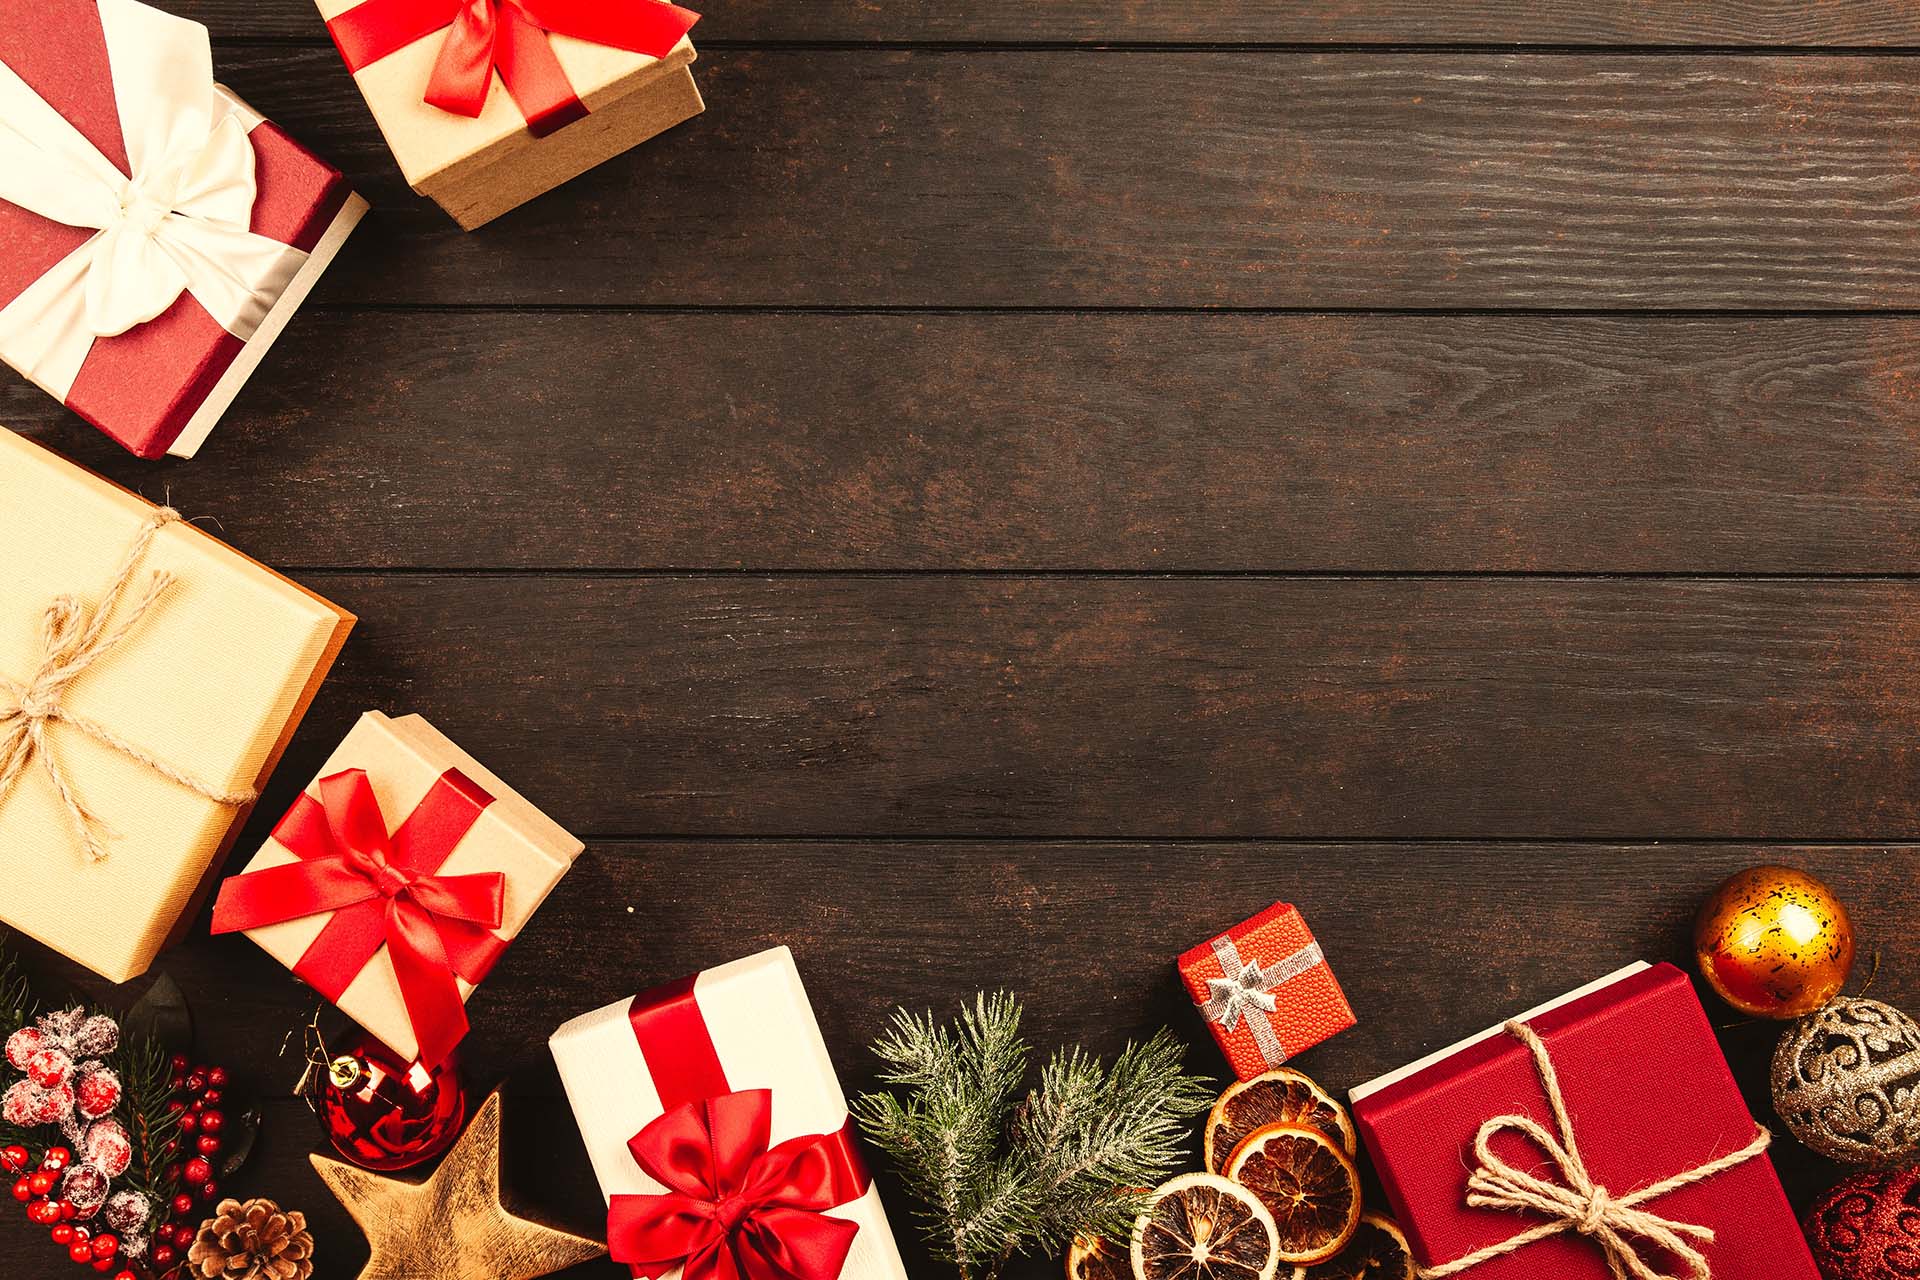 Holztisch mit weihnachtlicher Deko in rot/gold und Geschenken